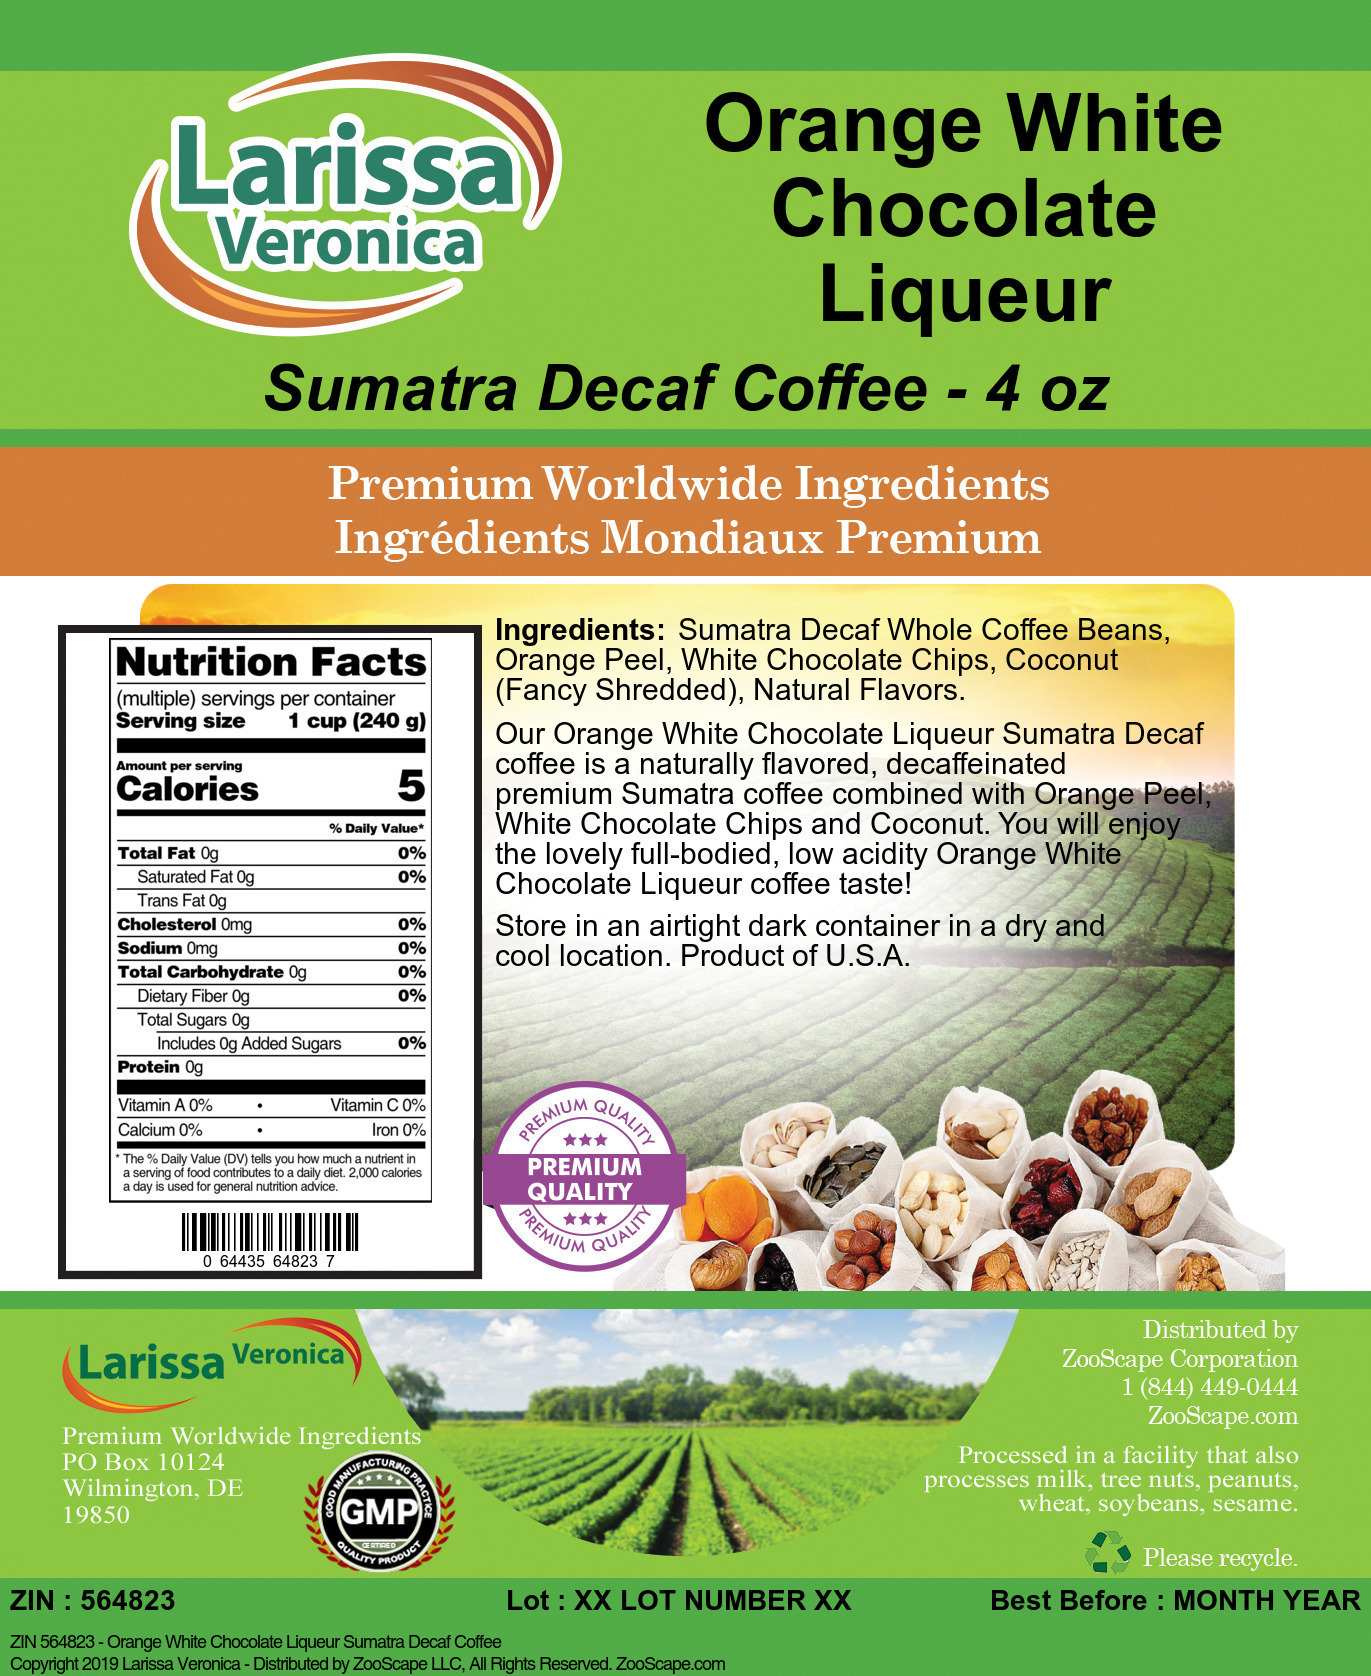 Orange White Chocolate Liqueur Sumatra Decaf Coffee - Label